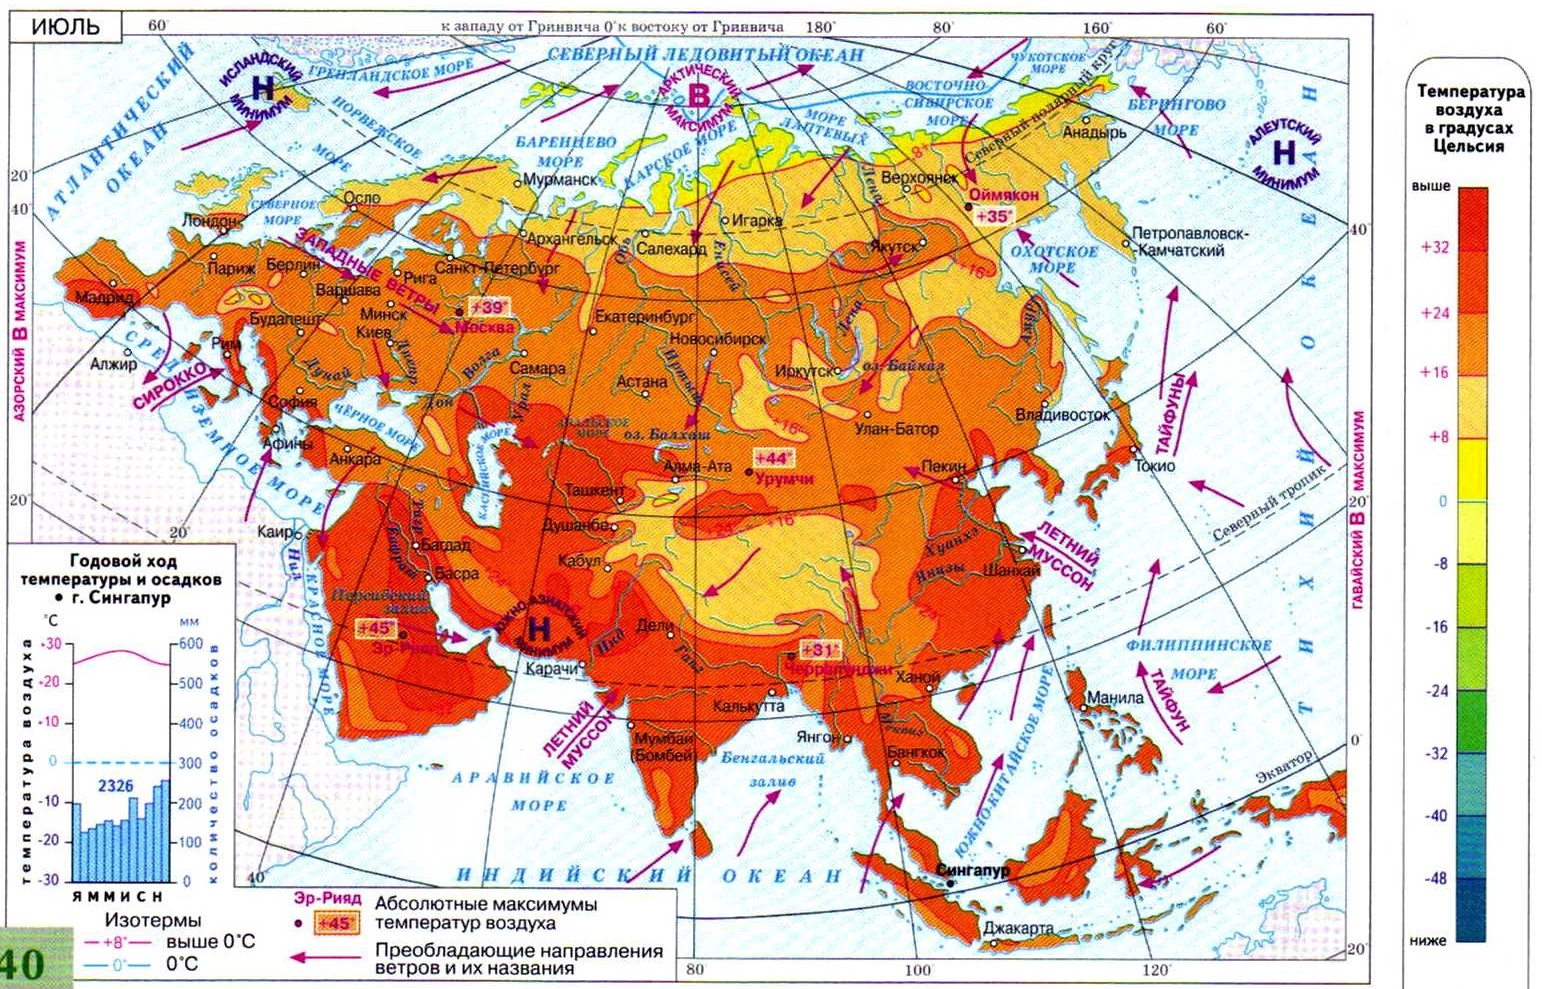 Объяснение климатических различий на территории евразии. Карта климата Евразии 7 кл. Климатическая карта Евразии. Карта климатических зон Евразии. Температурные зоны Евразии.